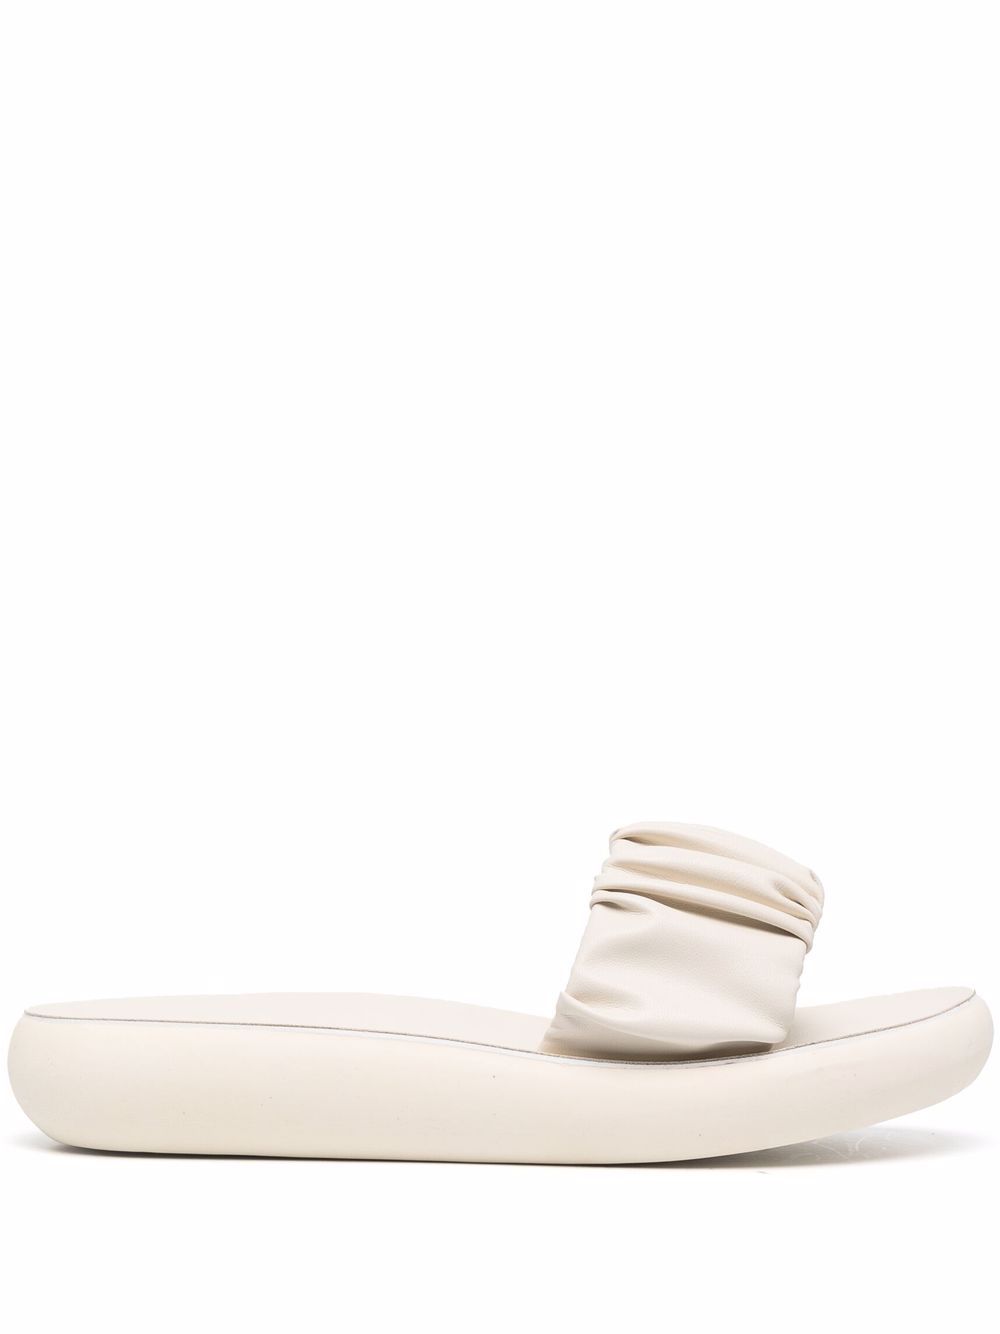 Ancient Greek Sandals Scrunchie Taygete sandals - White